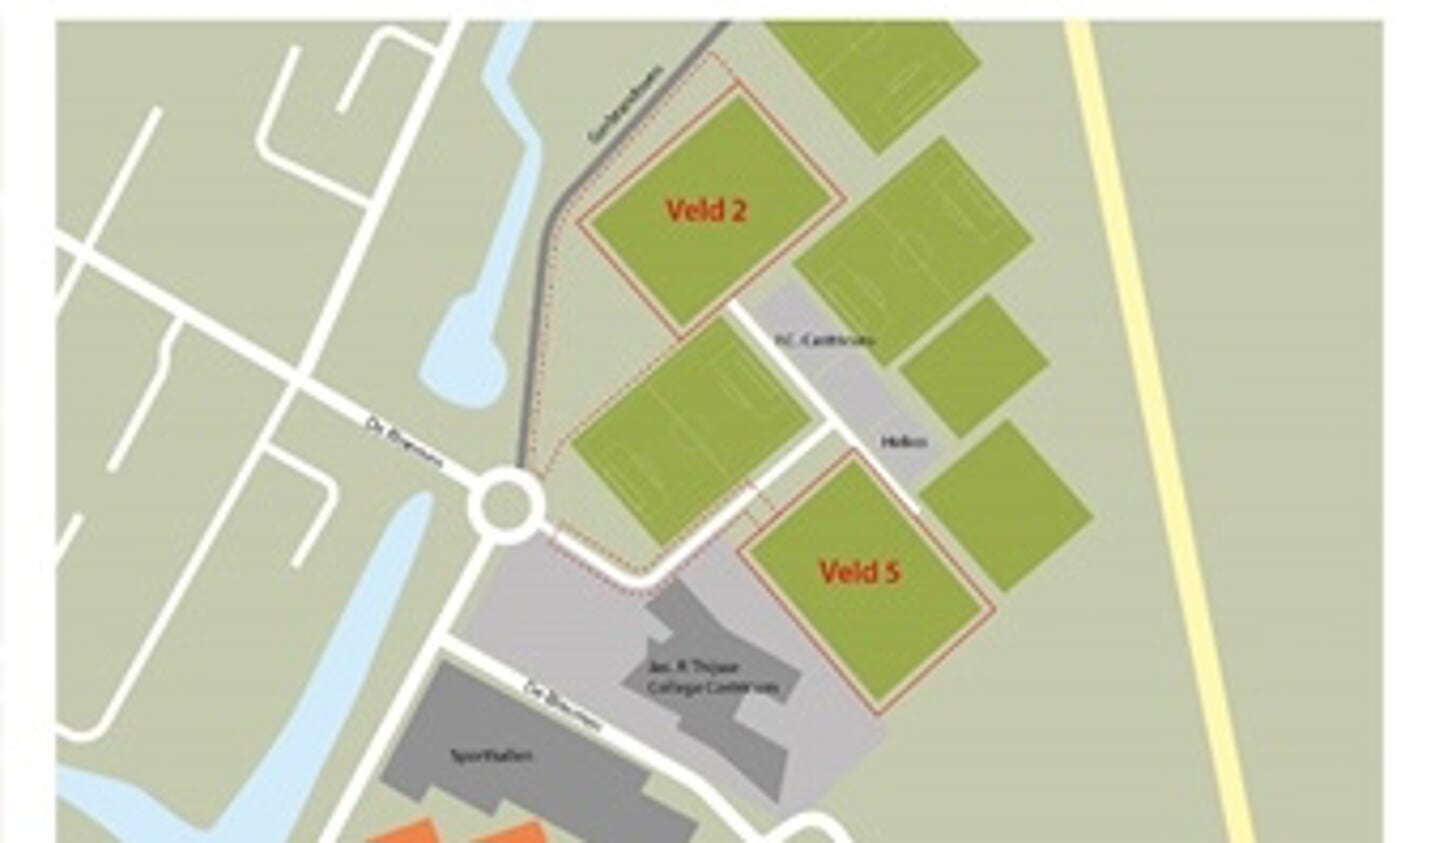 Een nieuw te bouwen zwembad op Sportpark Noord-End op Veld 5 heeft de voorkeur van het College.